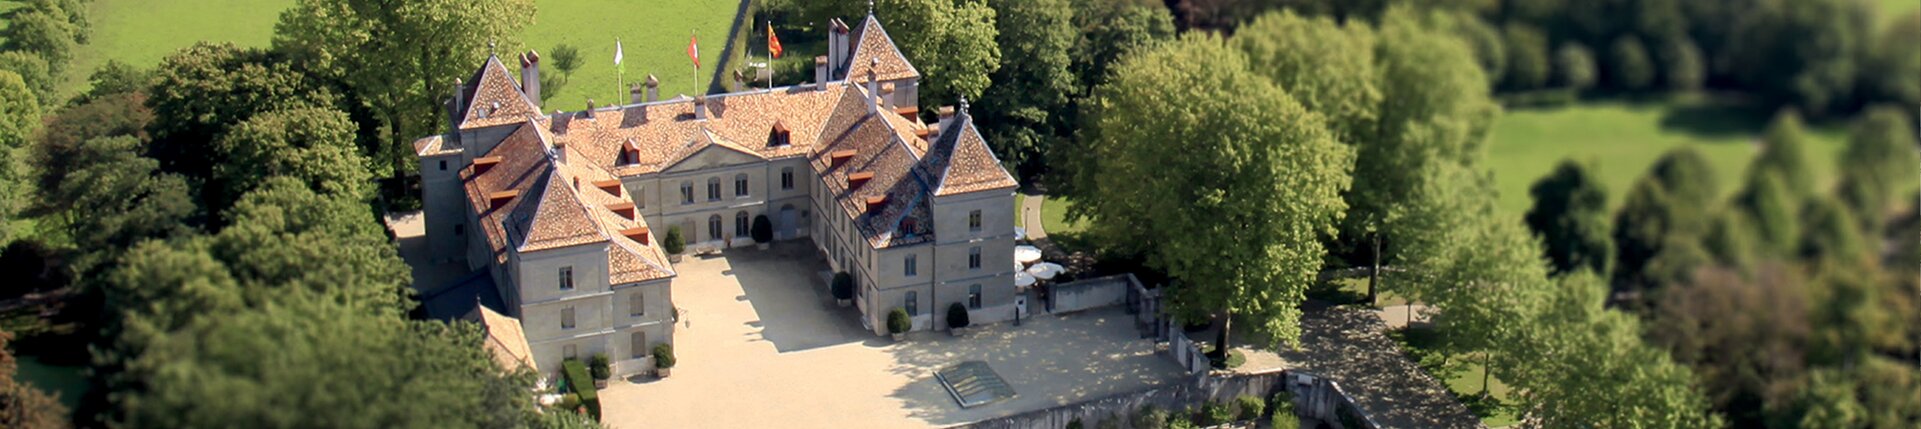 Das Château de Prangins